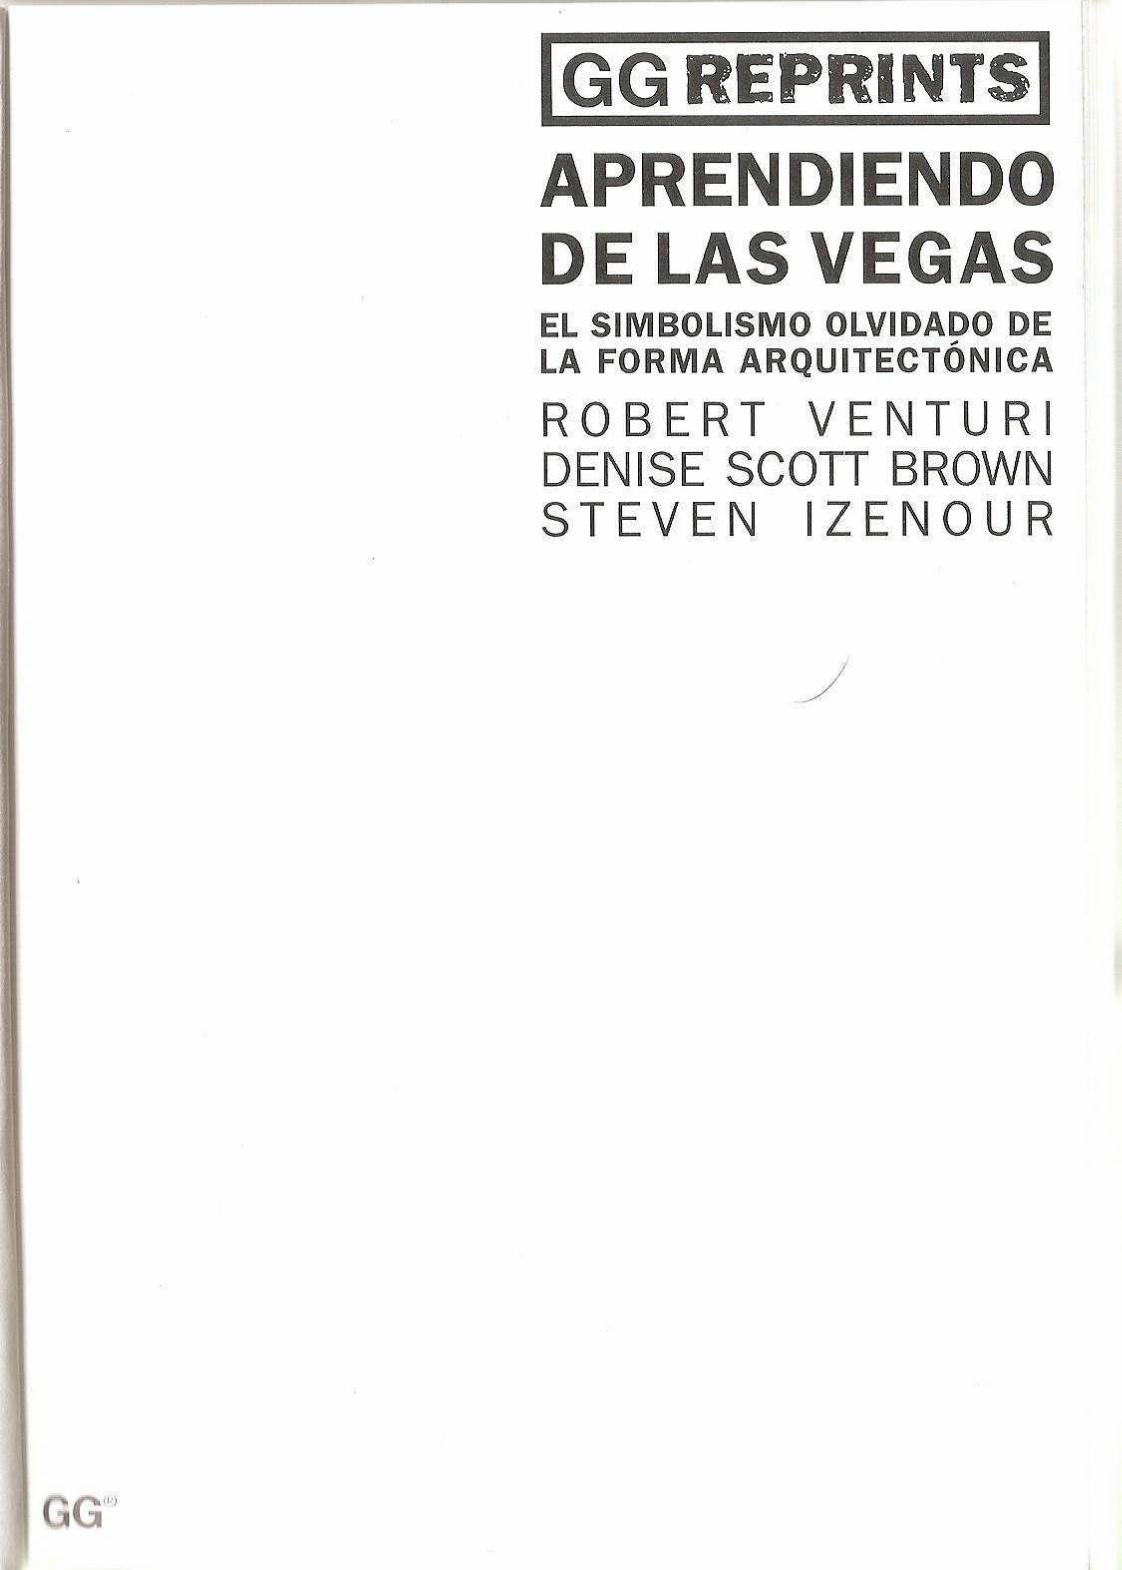 PDF) Robert Venturi Aprendiendo de Las Vegas PDF - DOKUMEN.TIPS